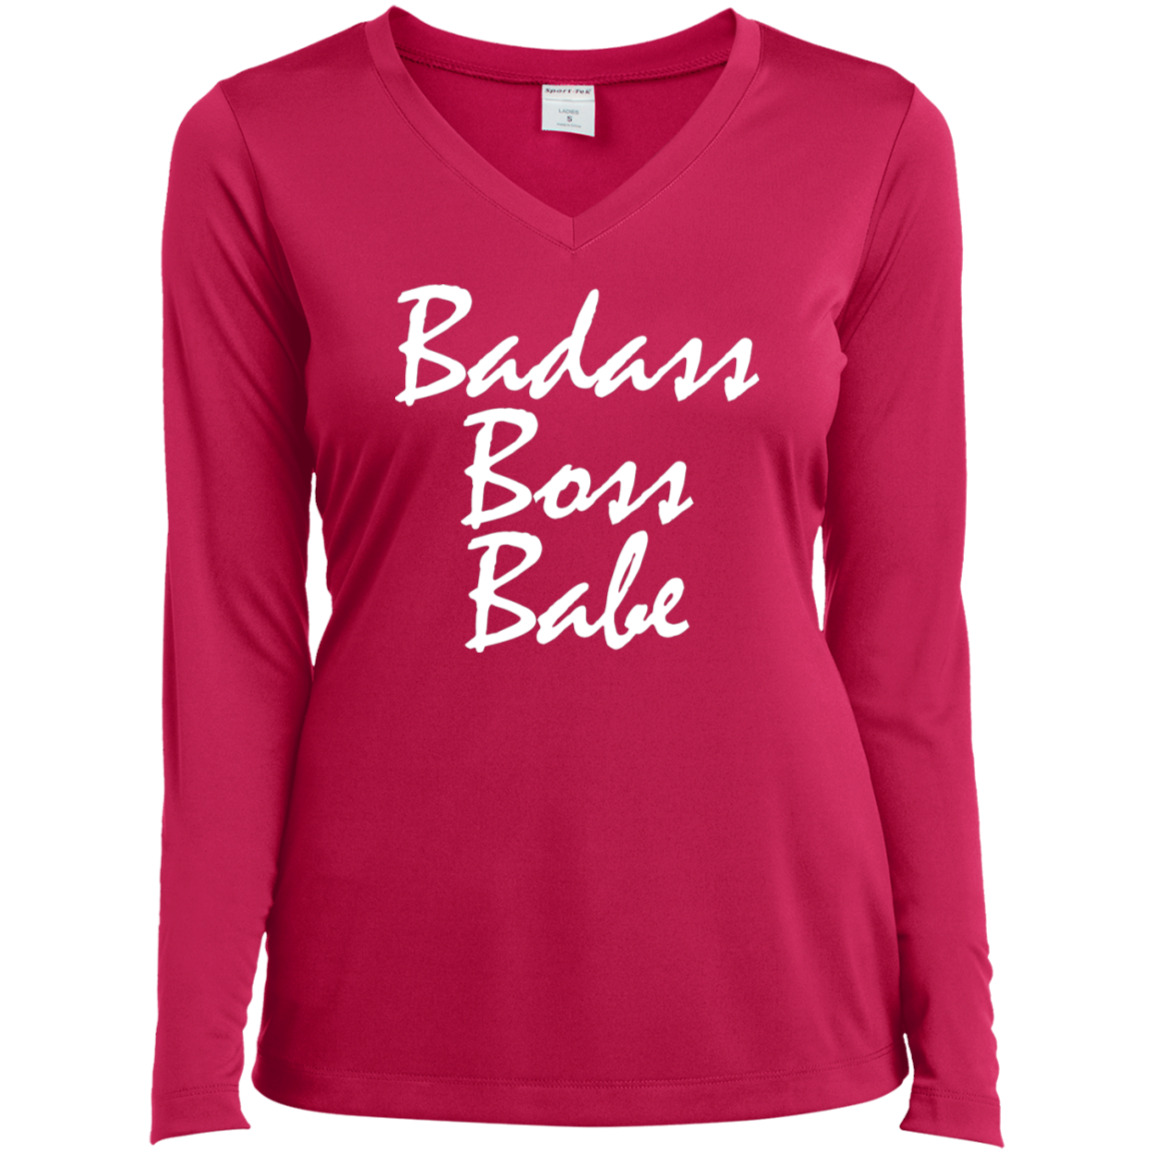 BADASS BOSS BABE!  Long-Sleeve Performance V-Neck T-Shirt - FabulousLife